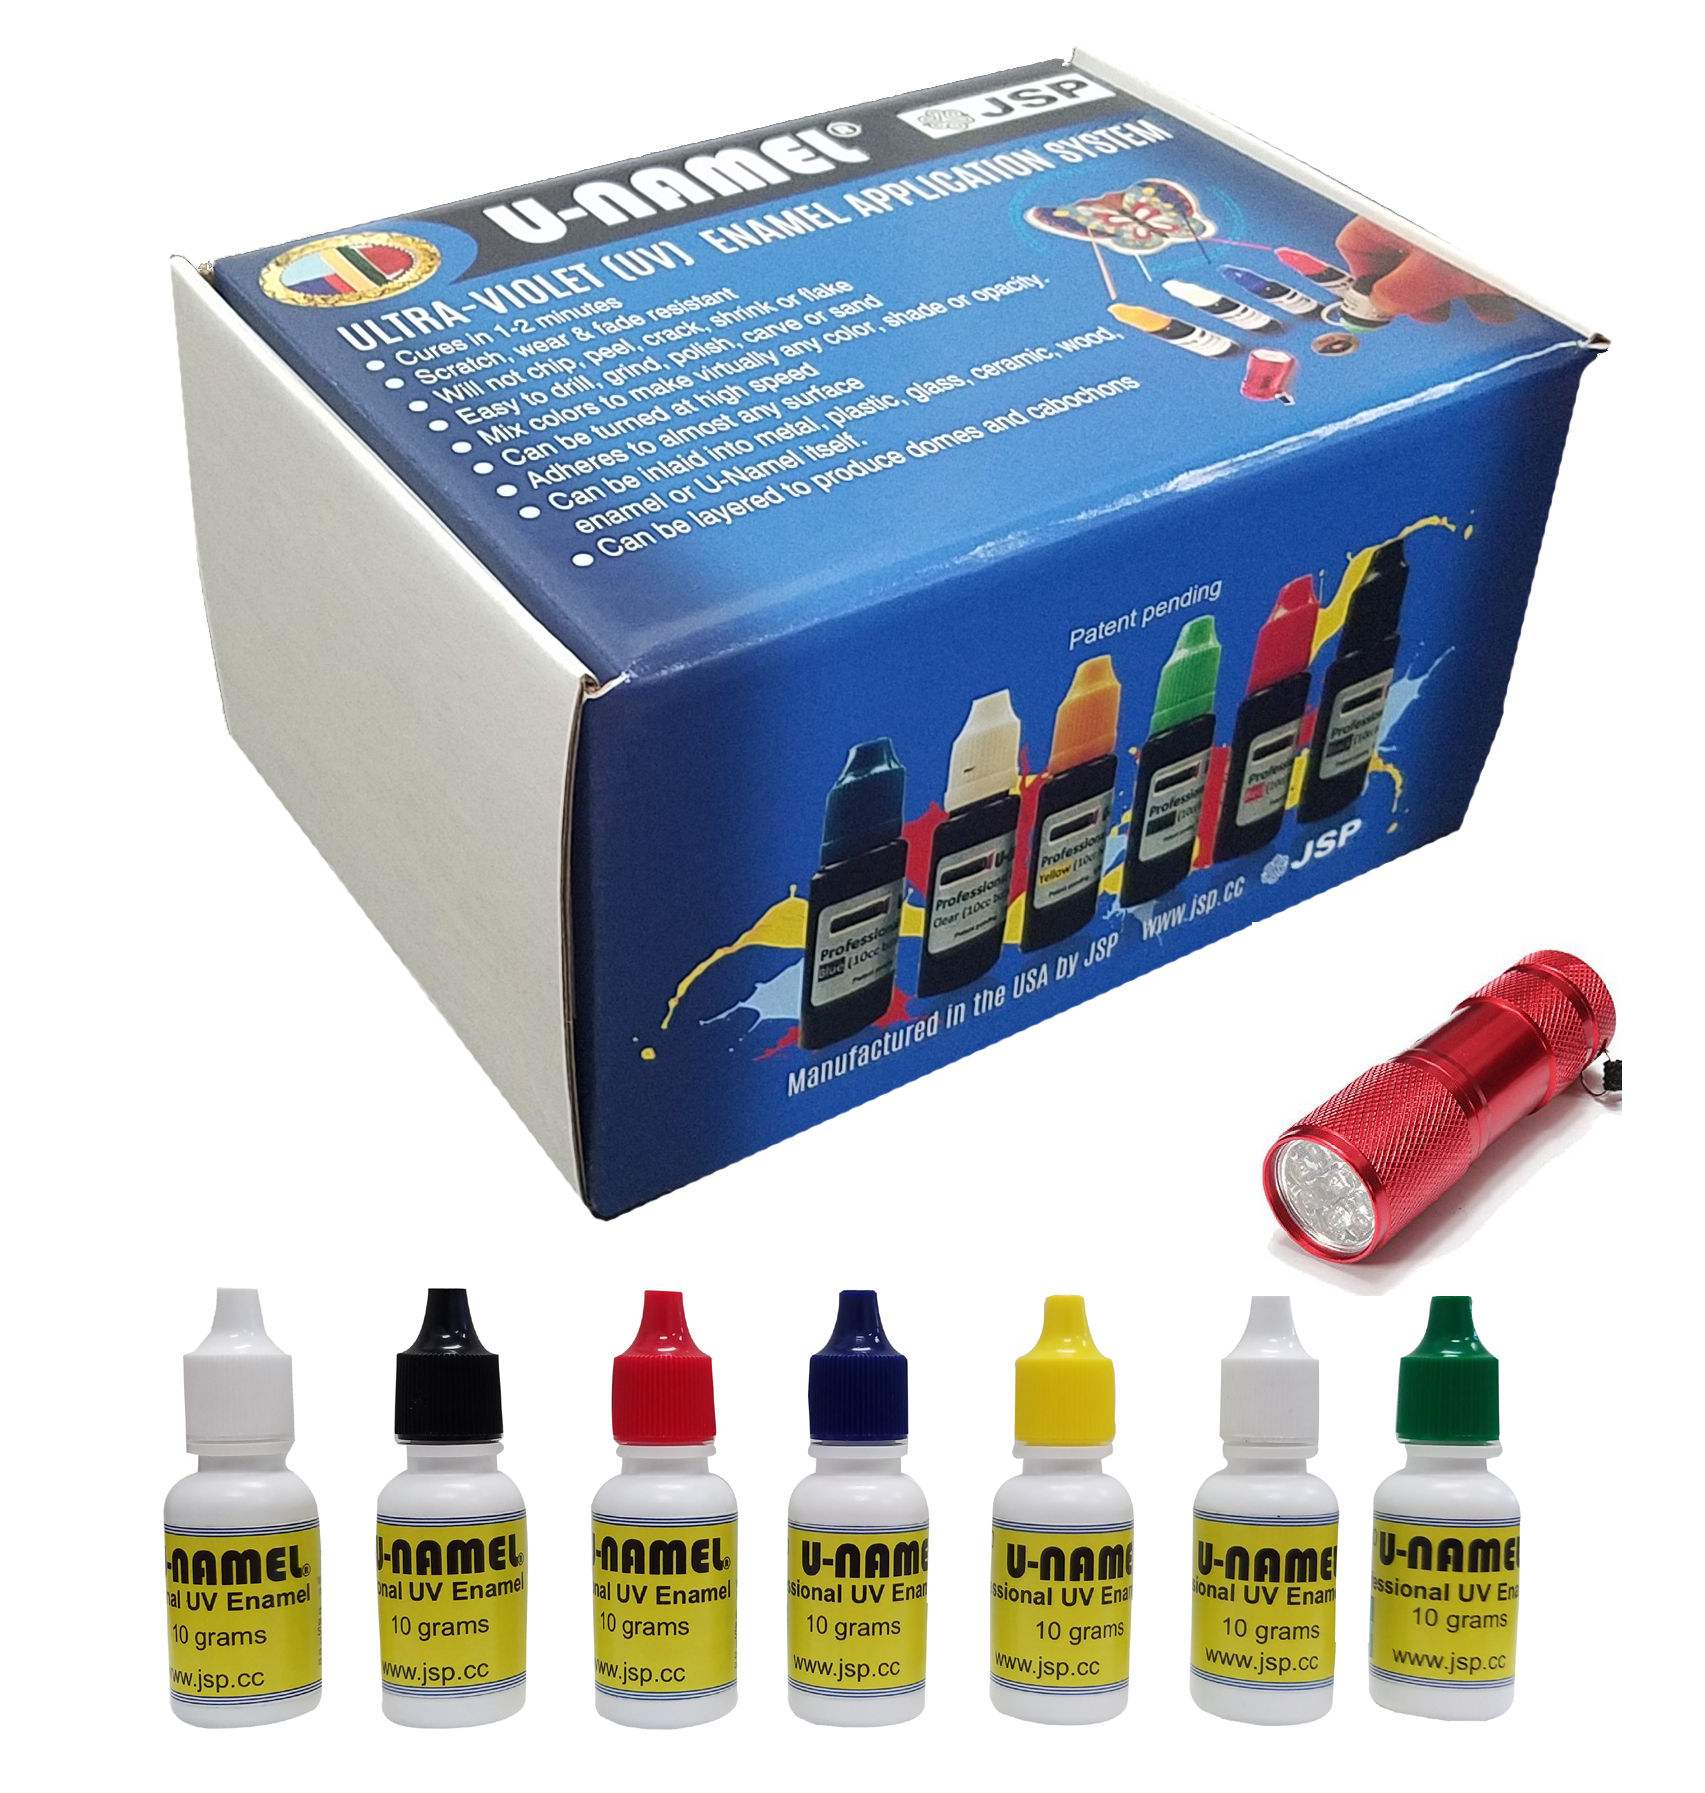 U-NAMEL® STARTER kit, 7 colors + led - Click Image to Close